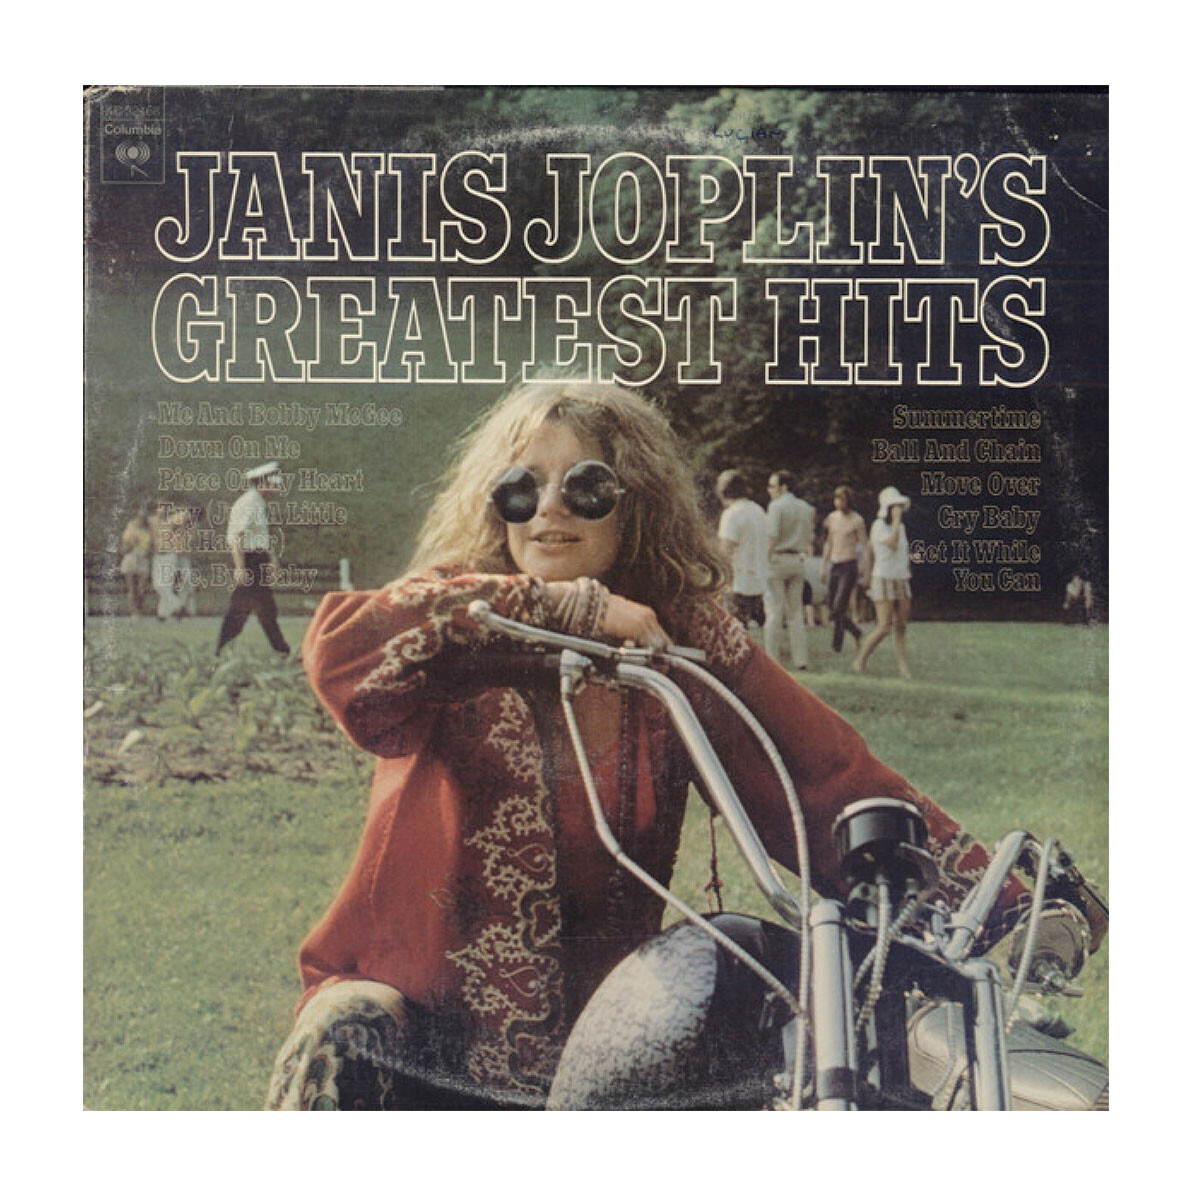 (c) Janis Joplin- Janis Joplins Greatest Hits 